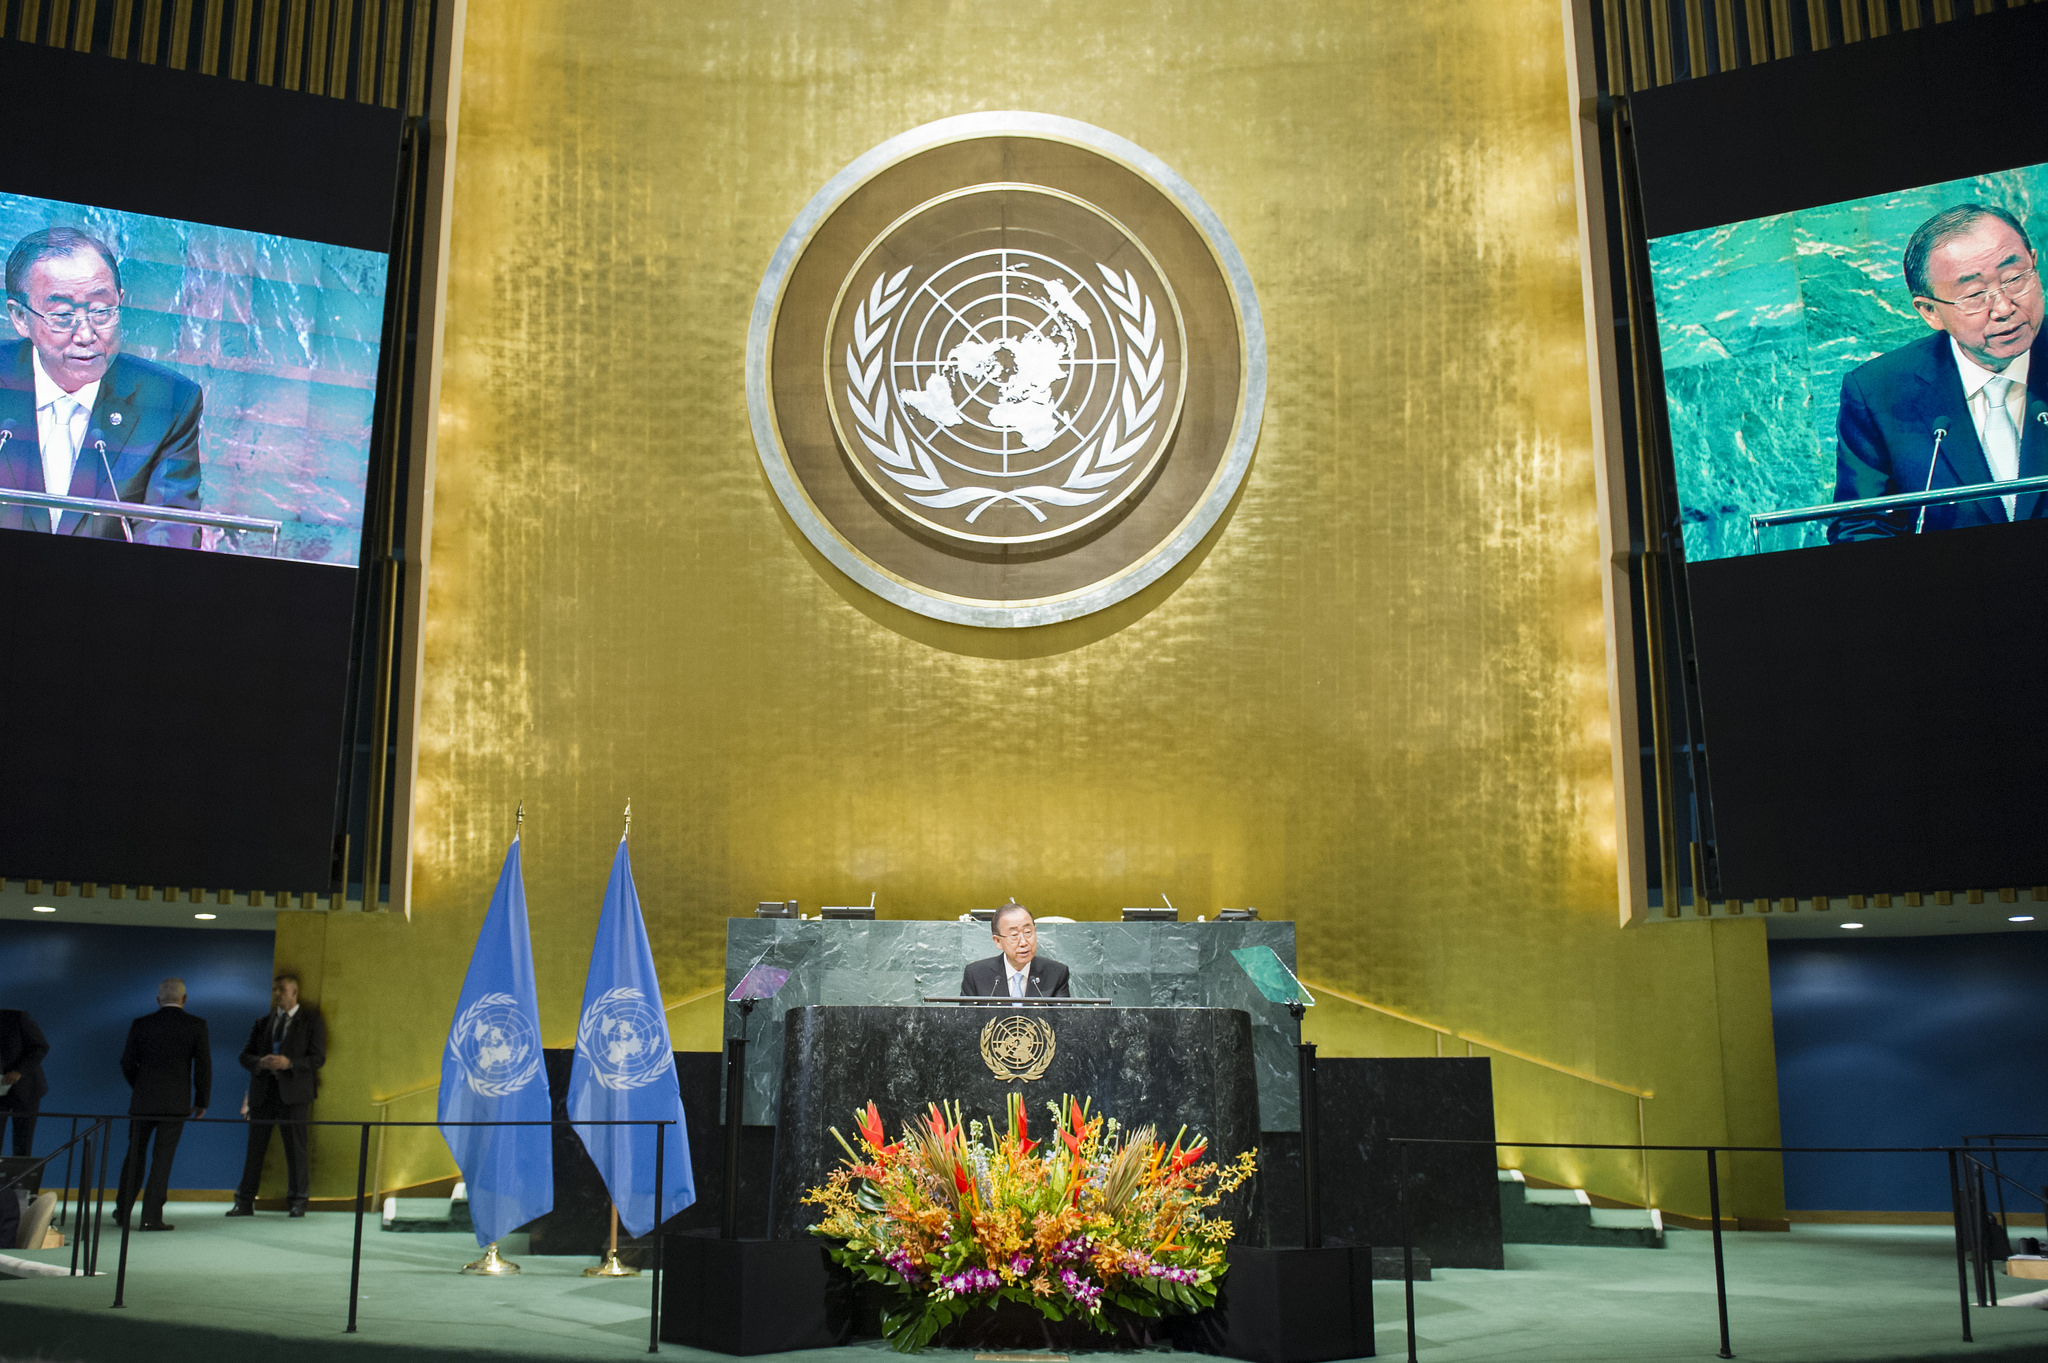 Ban Ki Moon, UN